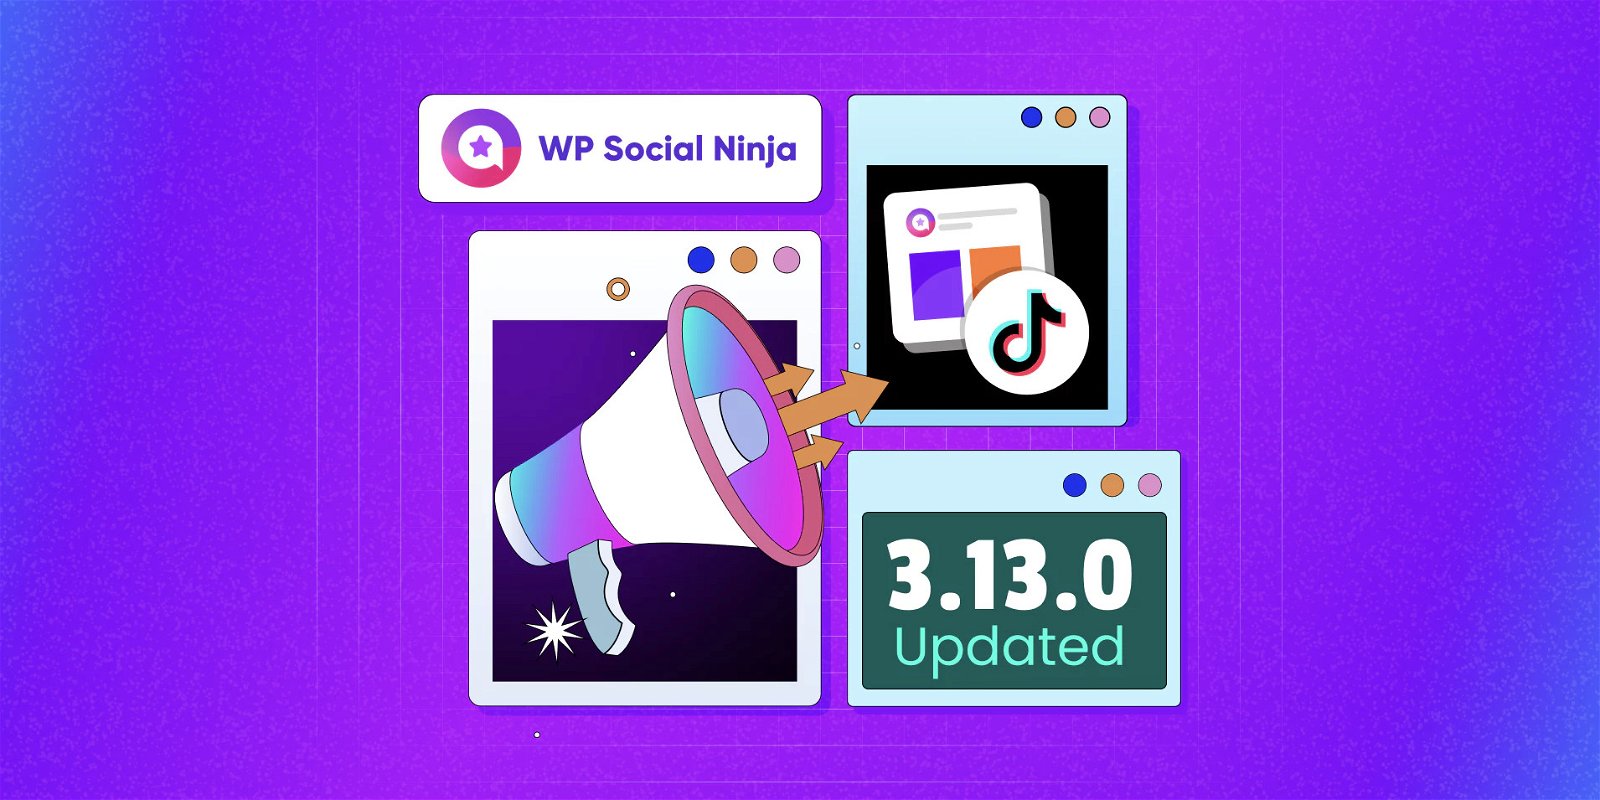 WP Social Ninja 3.13